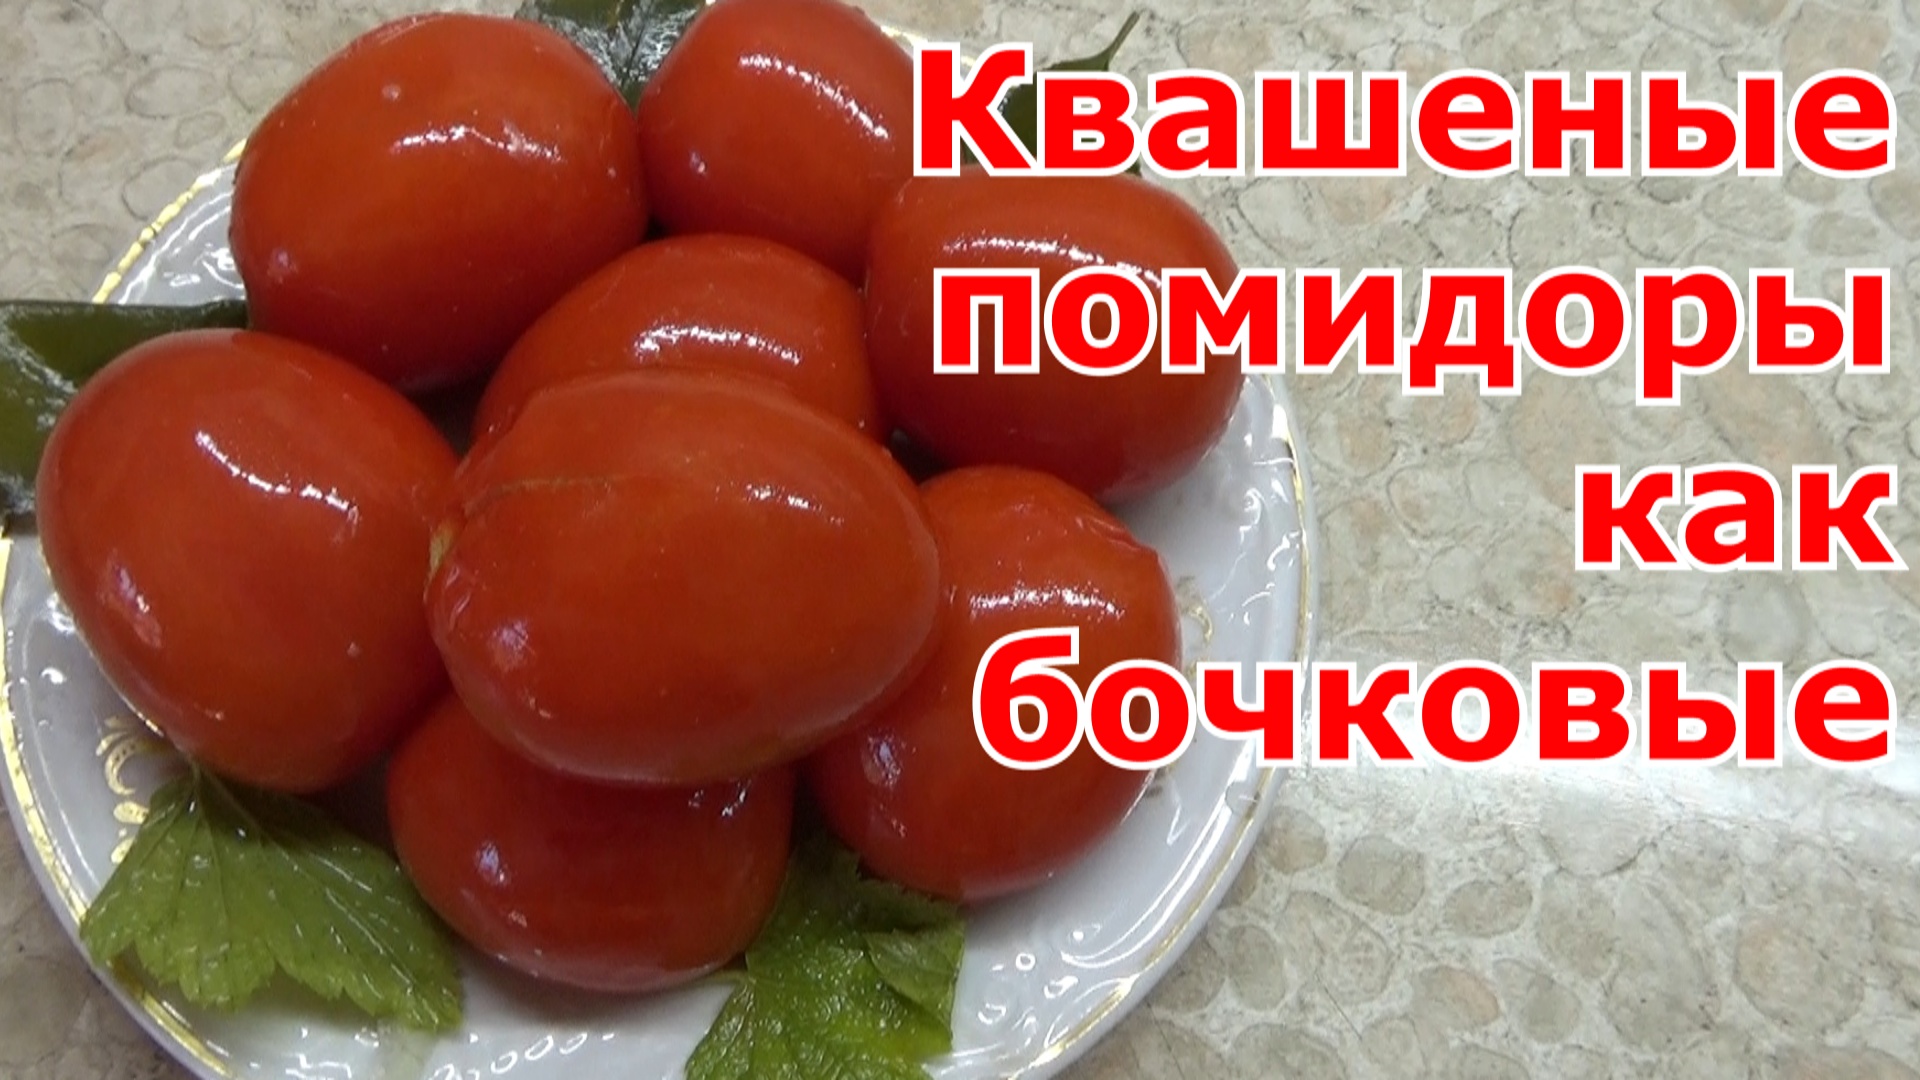 Квашеные (соленые) томаты как бочковые. Бочковые помидоры готовлю в ведрах и храню в банках.